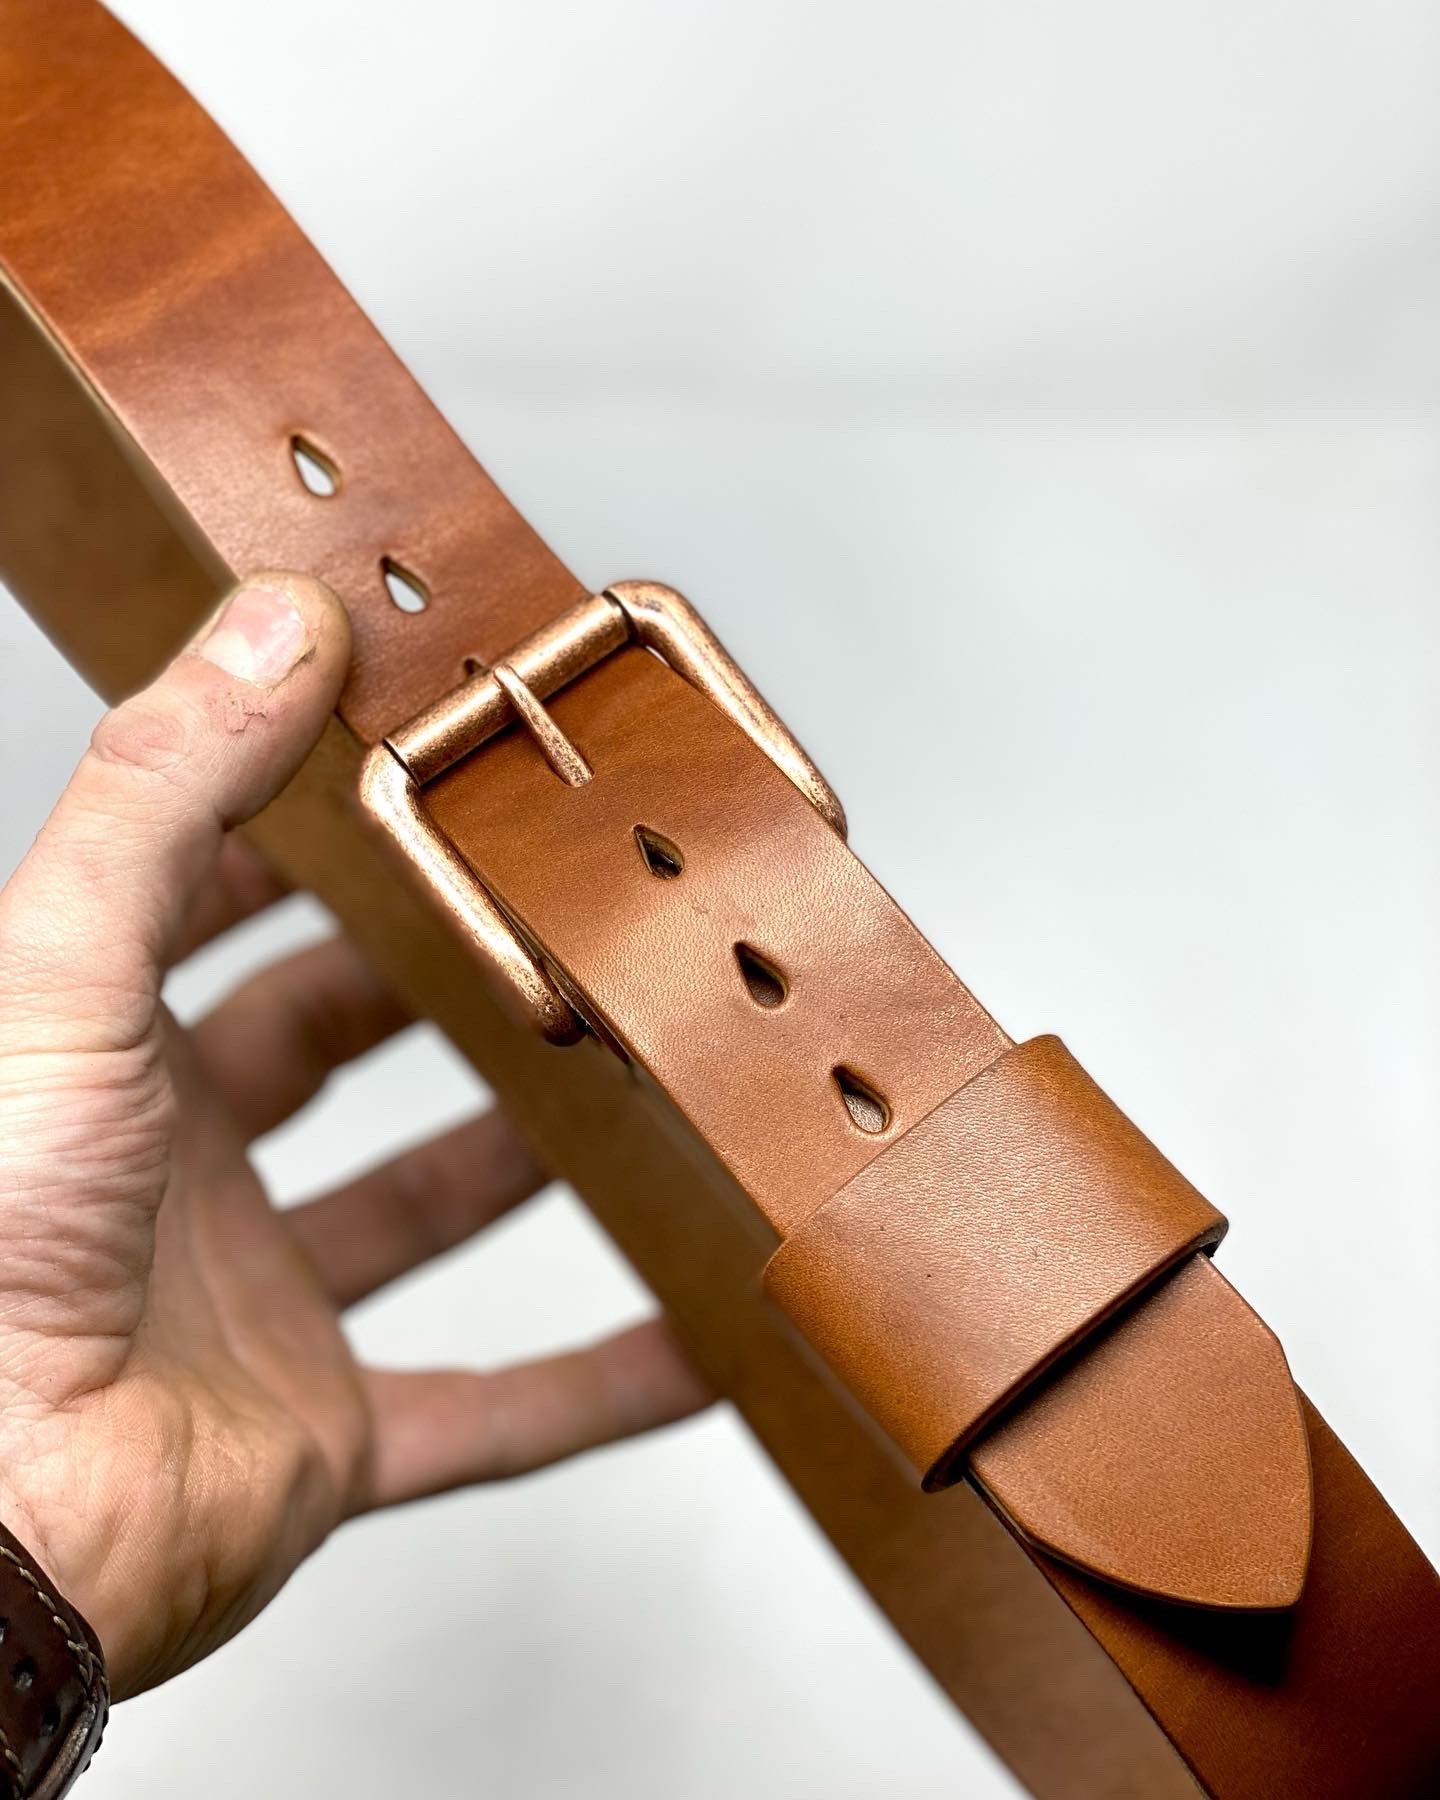 Wide Veg Tan Leather Shoulder 4mm (10oz.) For Belts